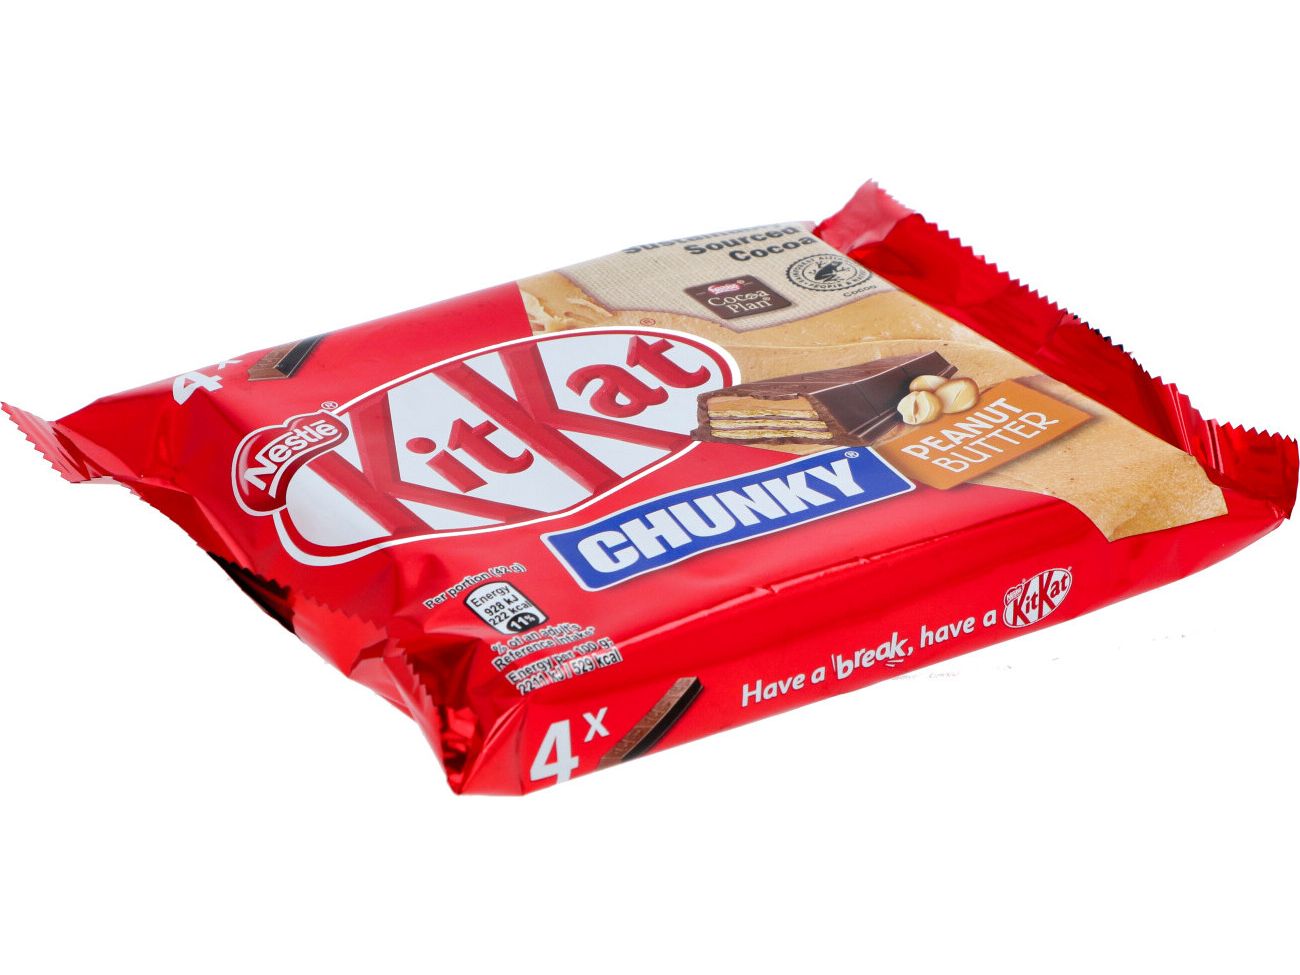 80x-kit-kat-chunky-peanut-butter-42-gram